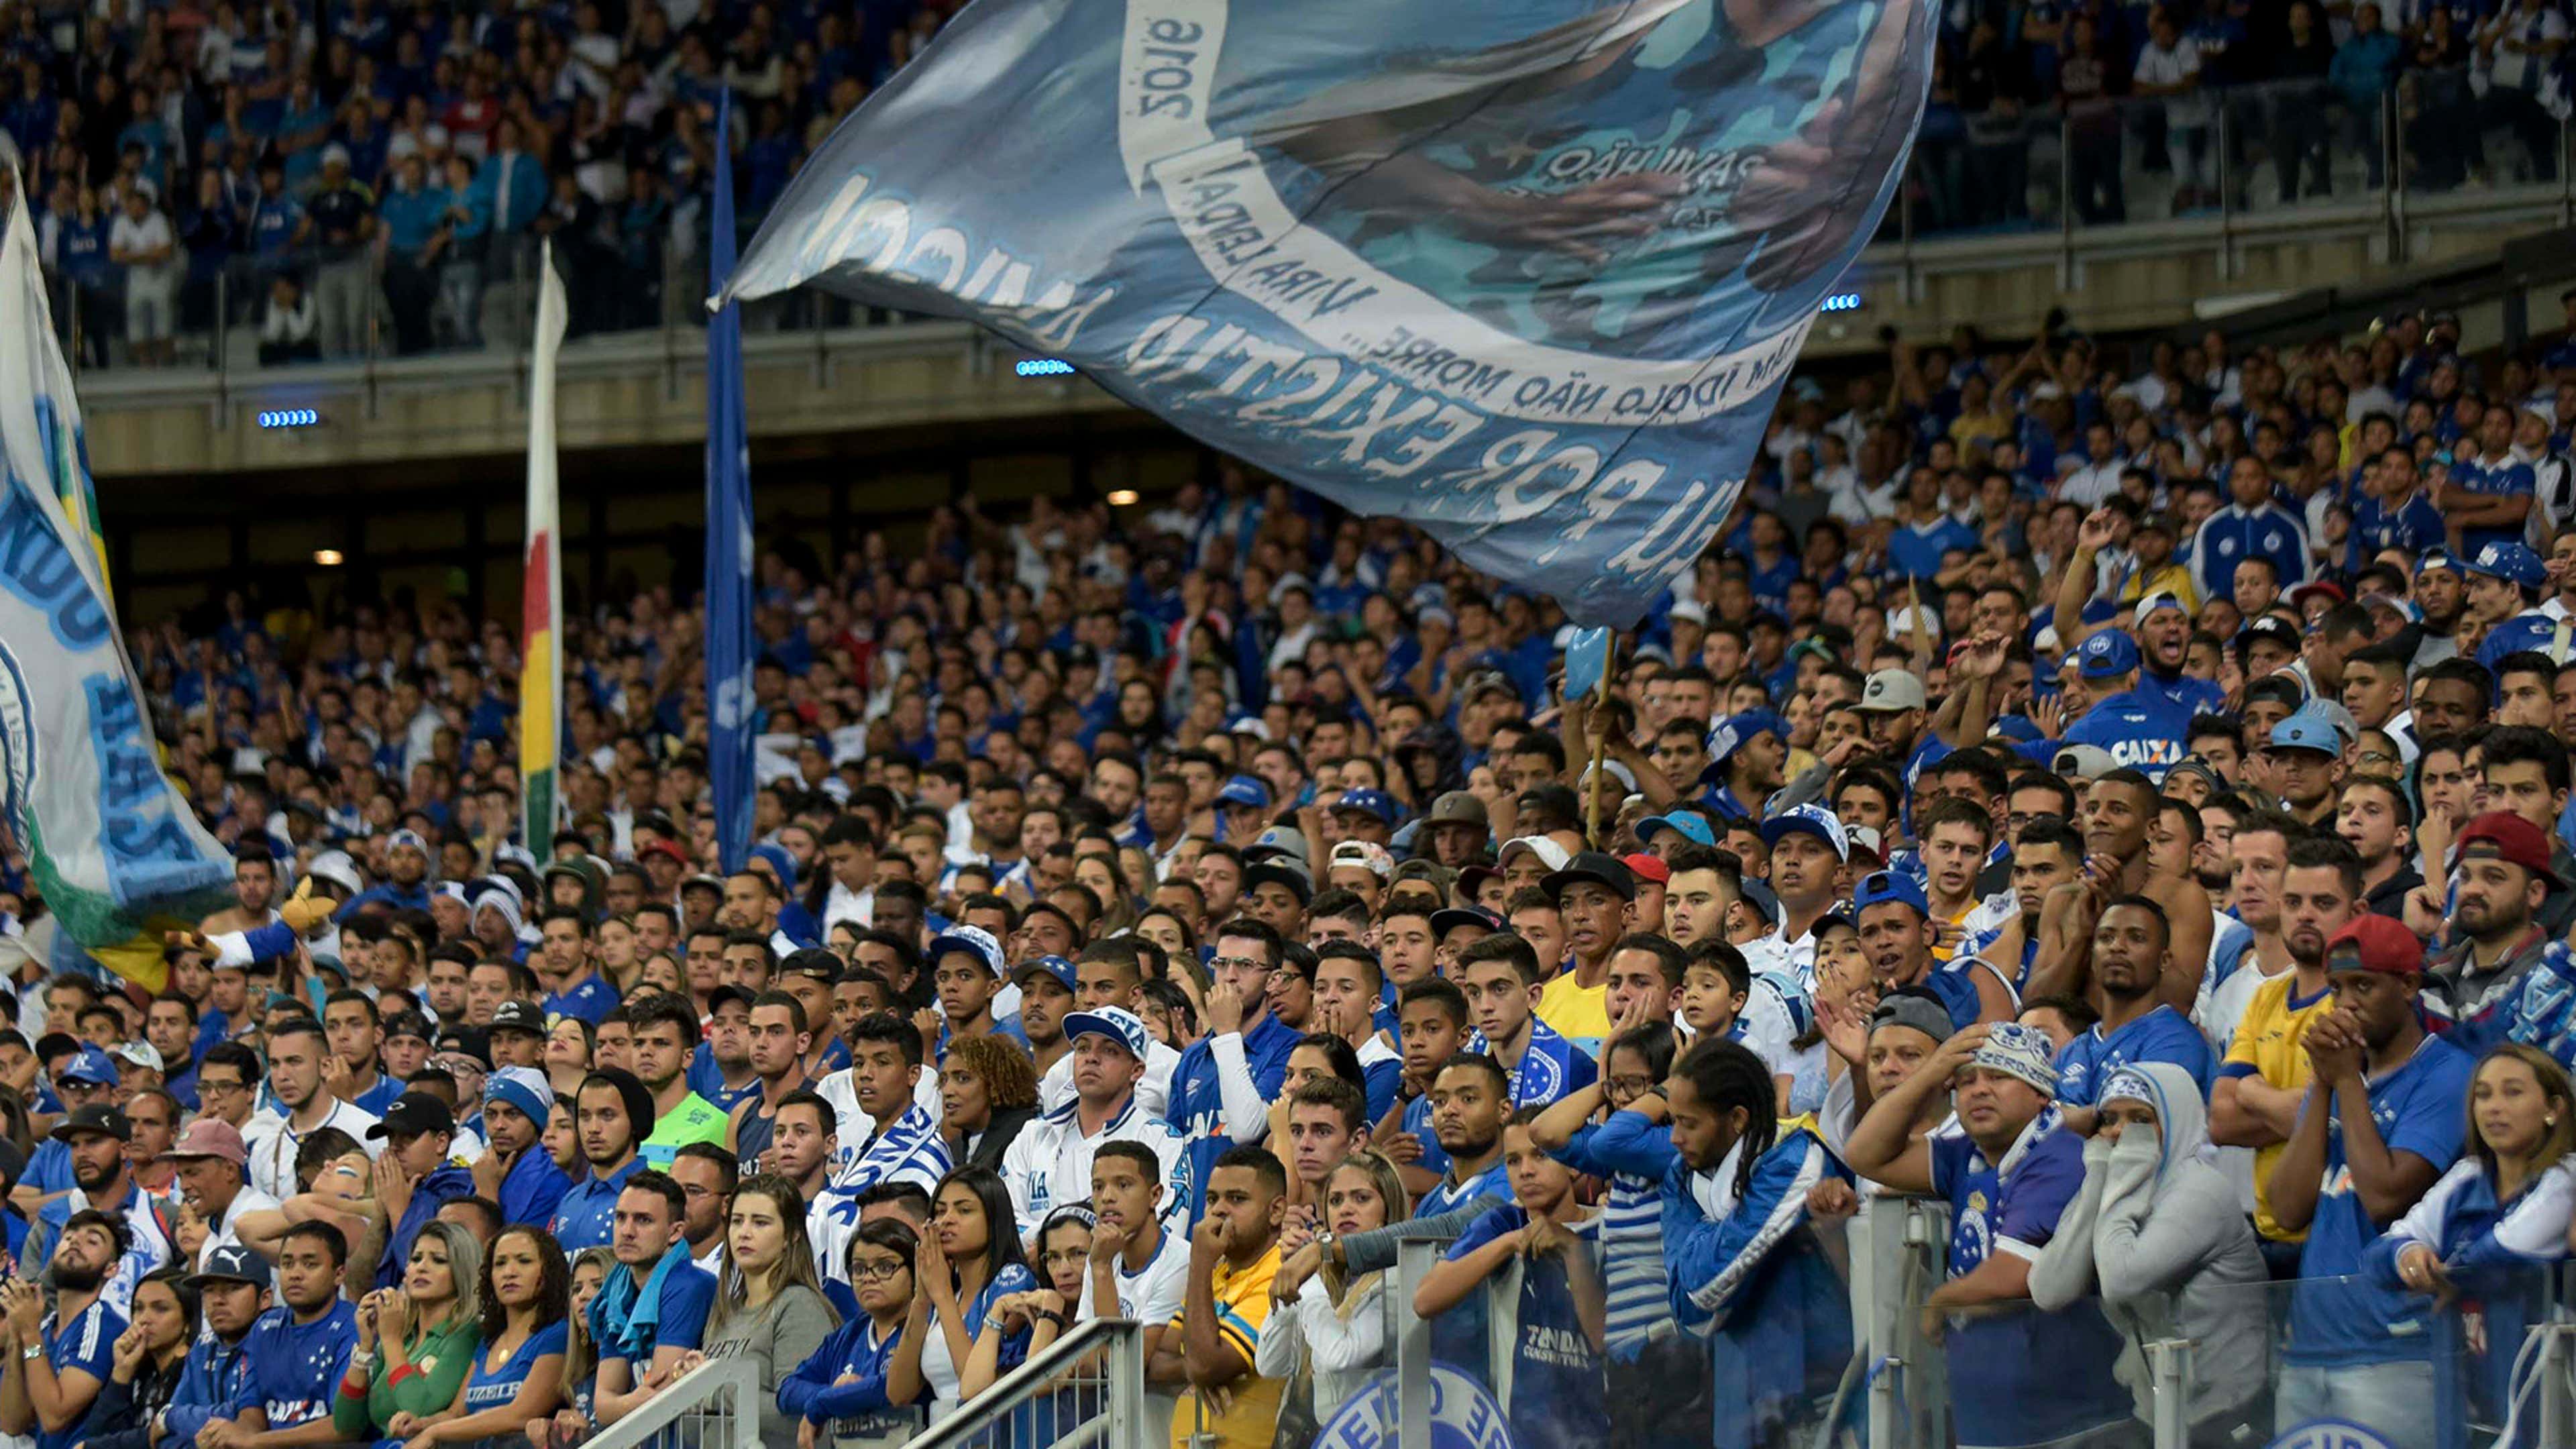 Fortaleza x Cruzeiro: onde assistir ao vivo, horário e prováveis escalações  do jogo pelo Brasileirão